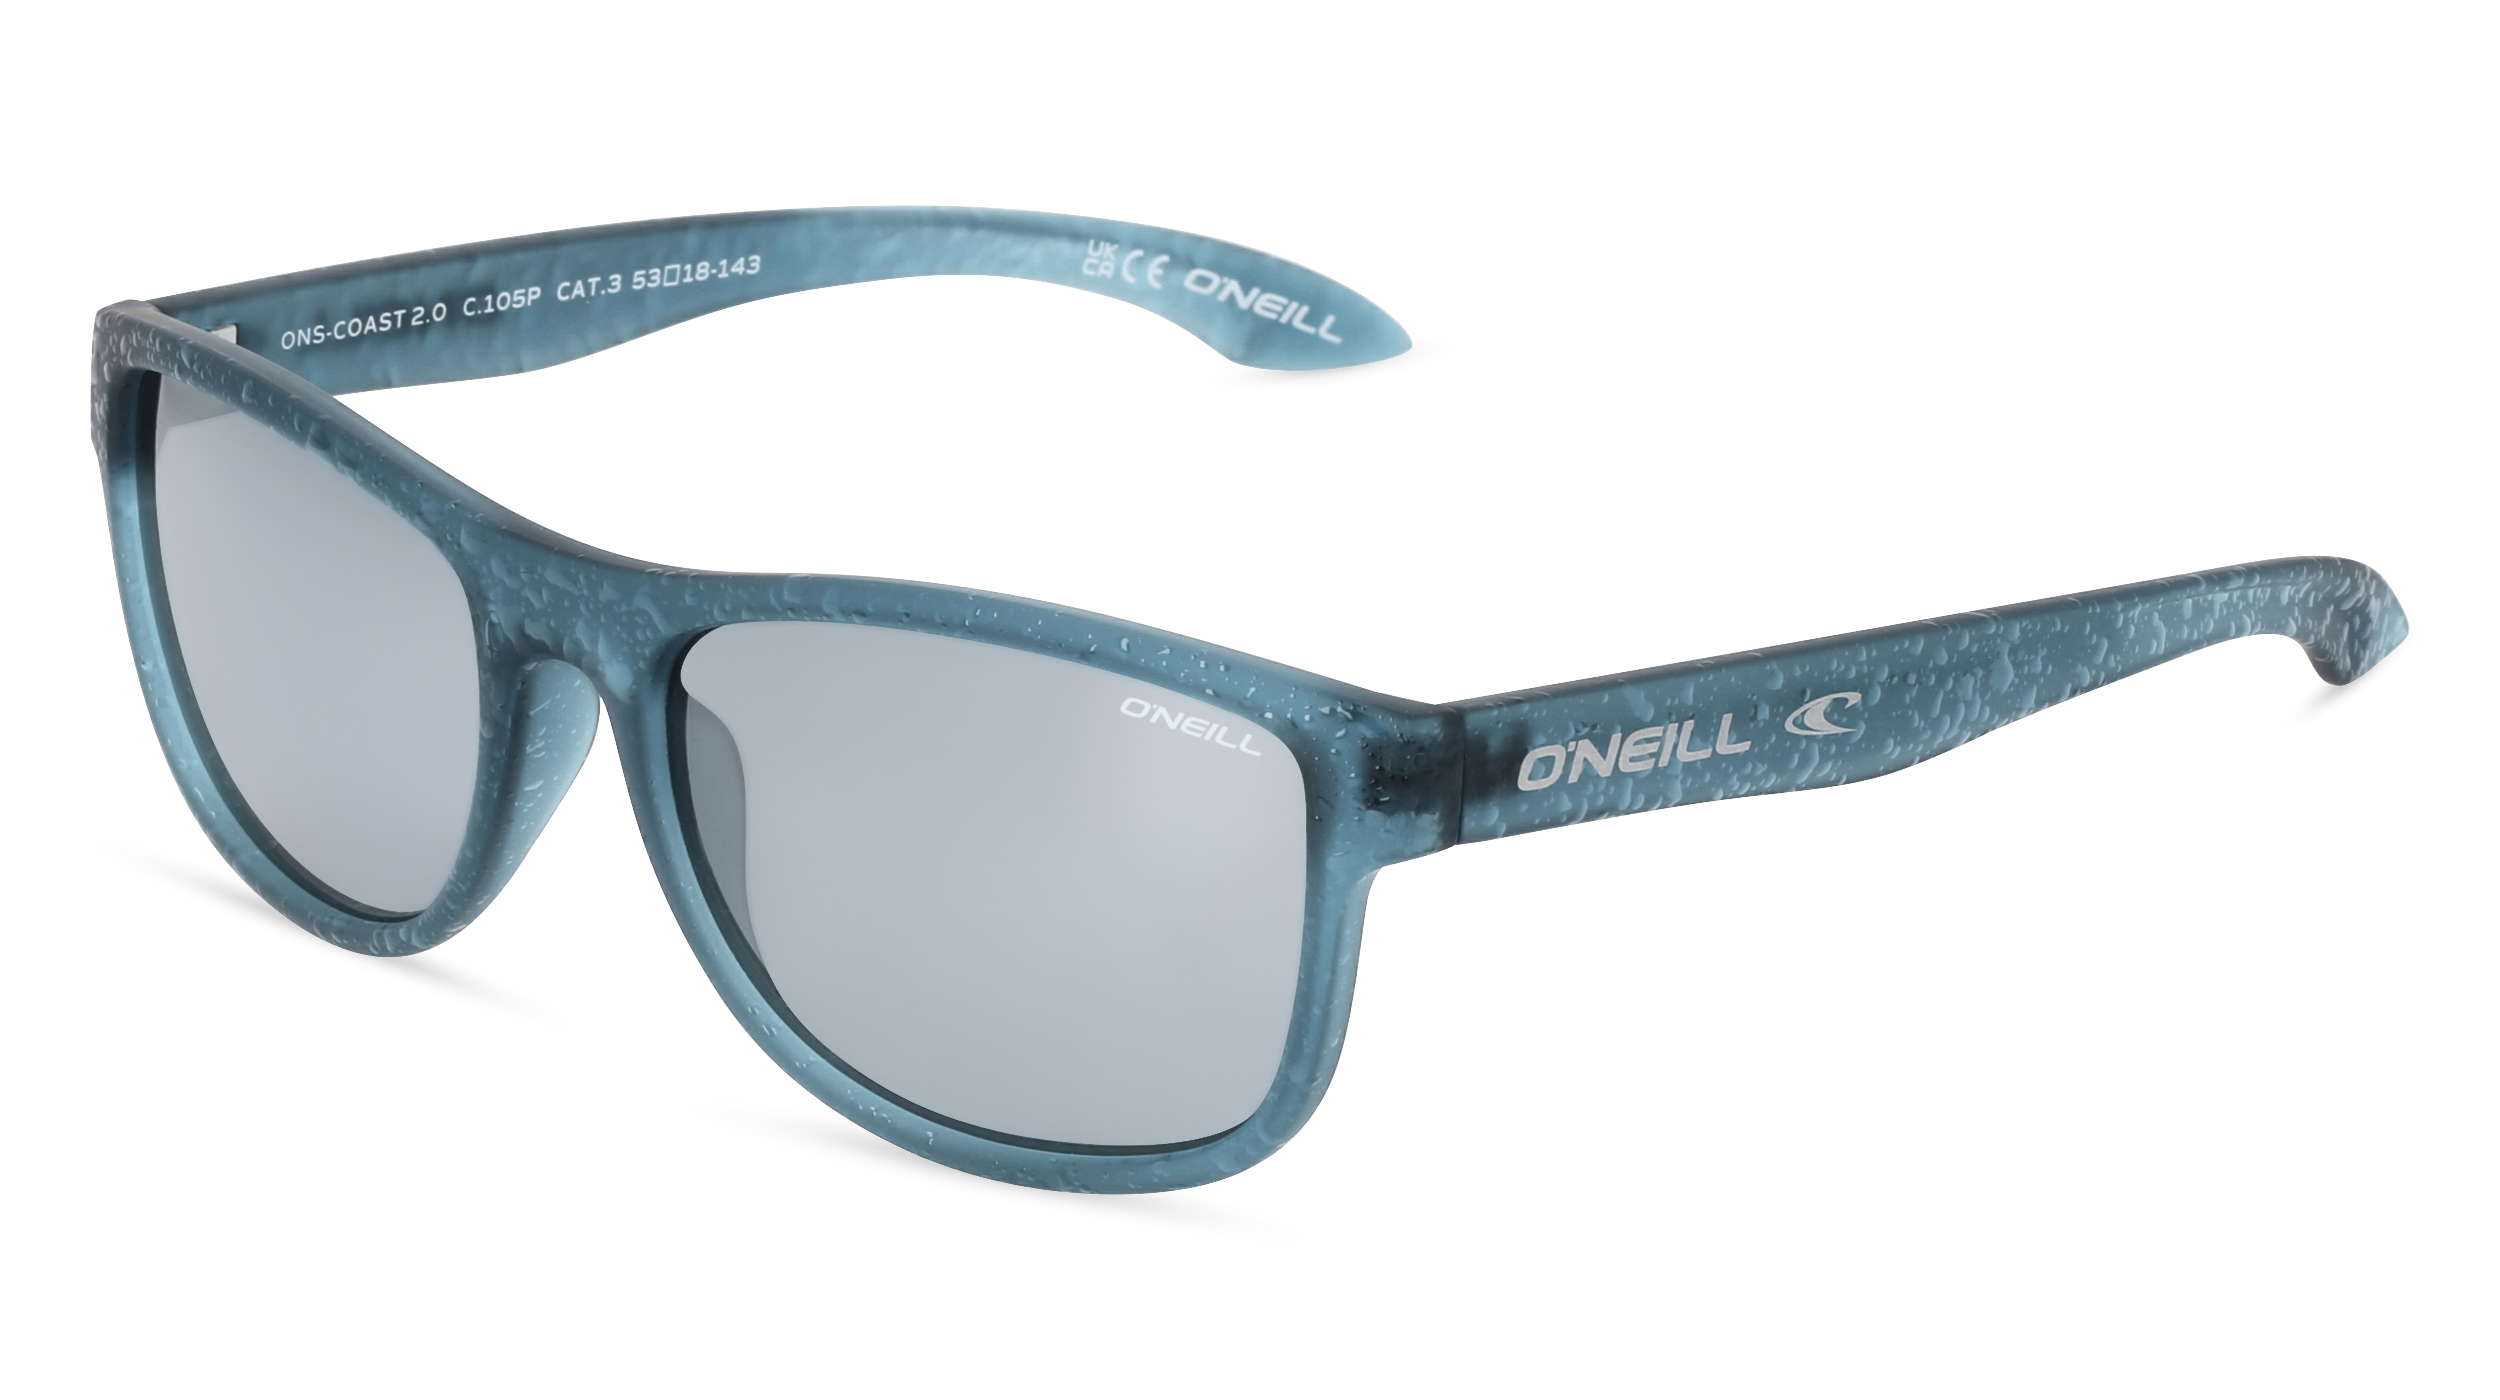 O'NEILL COAST2.0 | Unisex-Sonnenbrille | Oval | Fassung: Kunststoff Blau | Glasfarbe: Blau